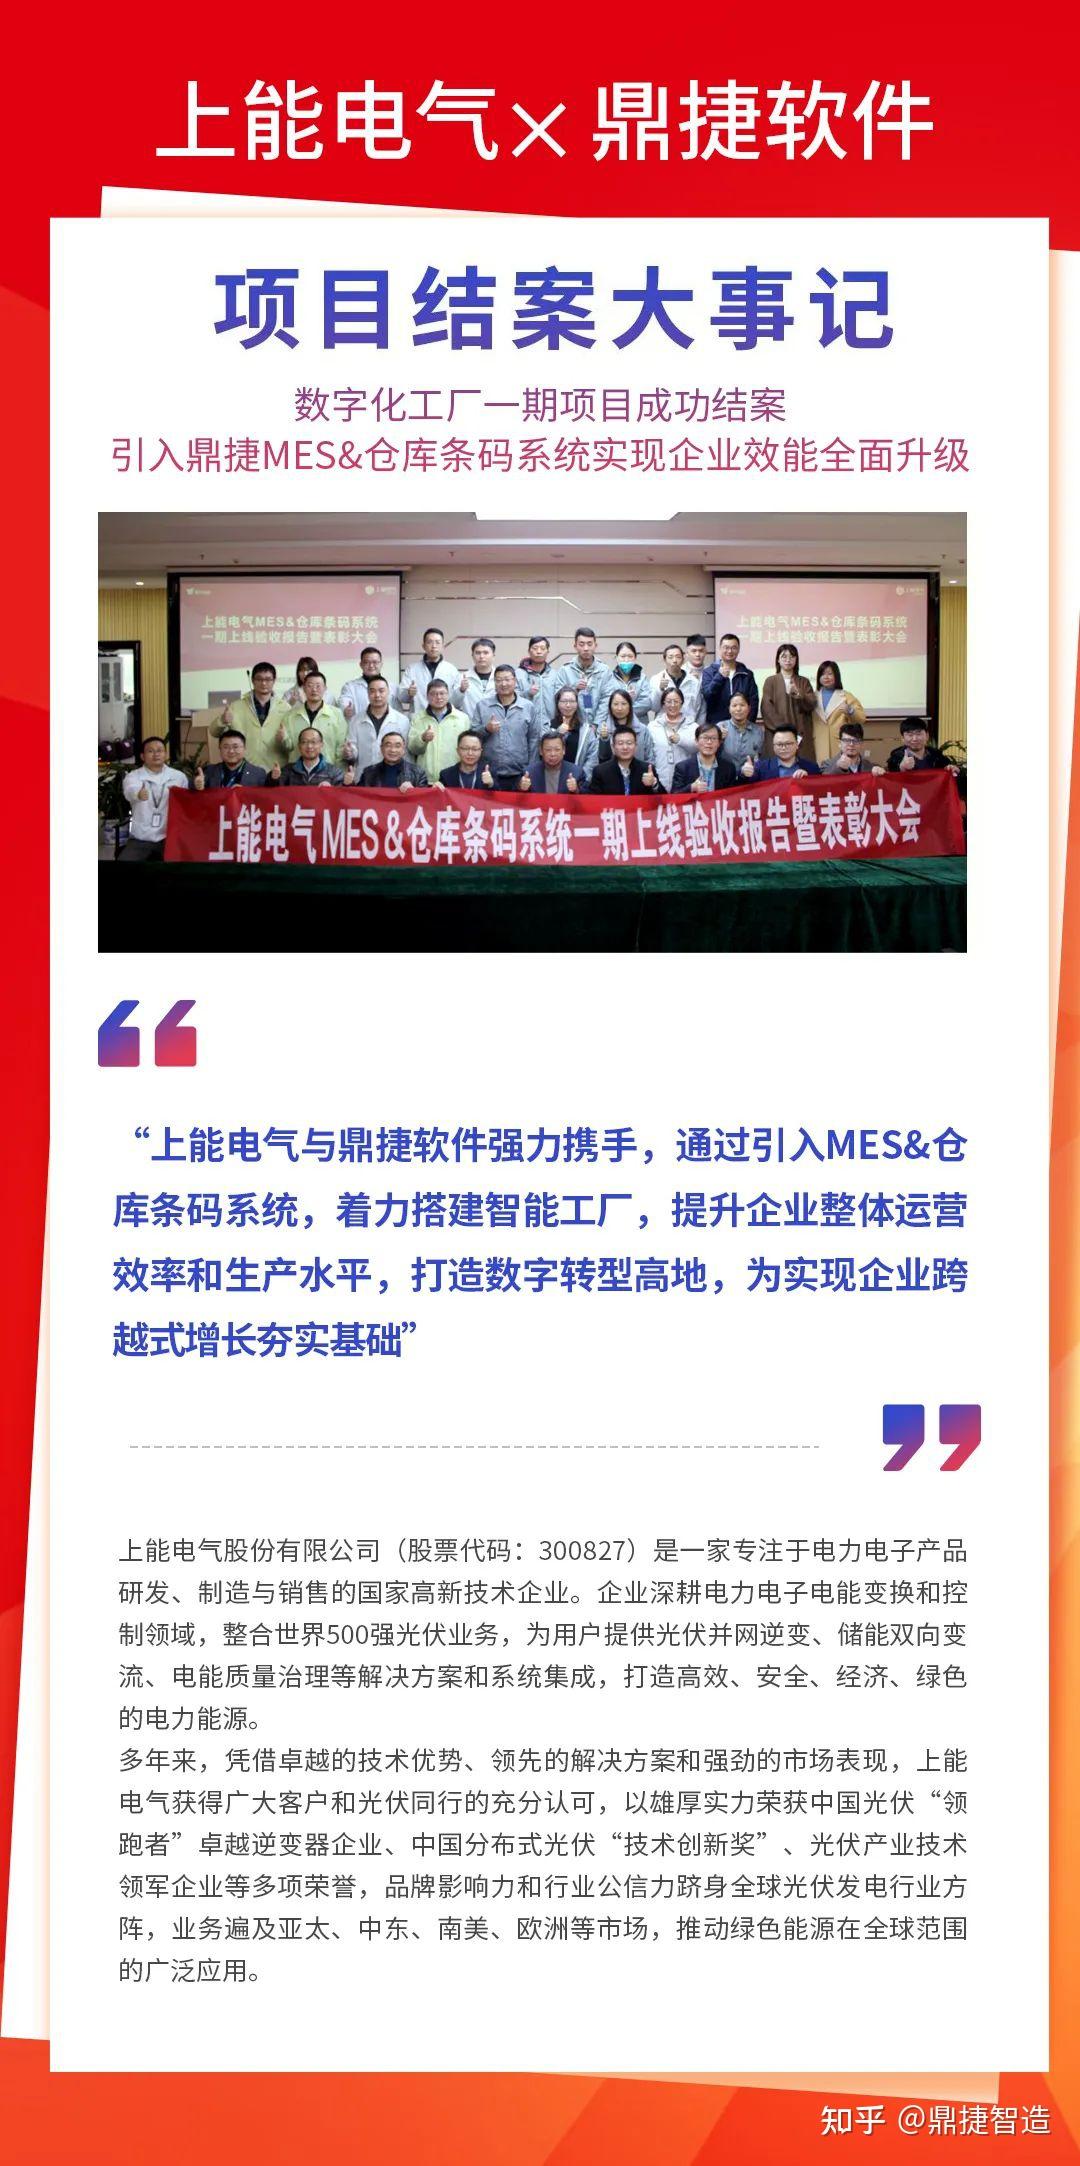 广州鼎捷软件有限公司_珠海市软件行业协会